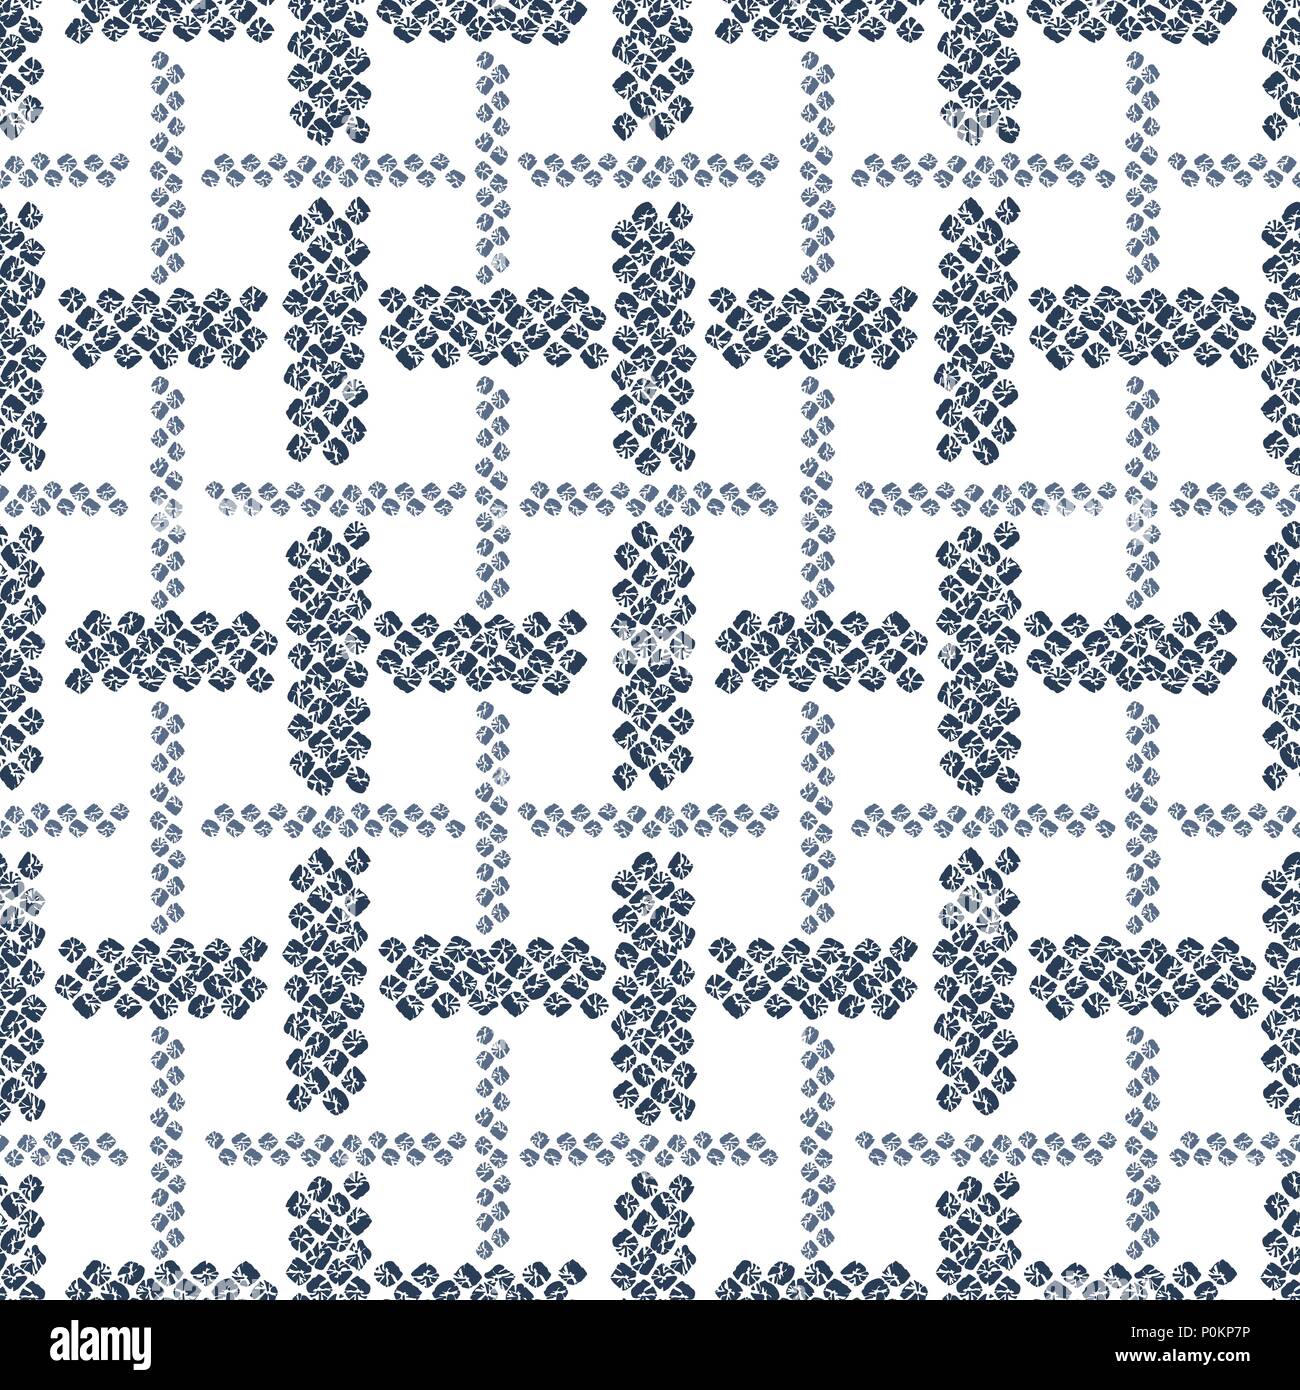 Checkered Shibori tuch Motiv. Japanische nahtlose Muster. Weißer Hintergrund. Indigo Farbe. Klassische asiatische färben Technik. Glatte Textur für Tapeten, Stock Vektor